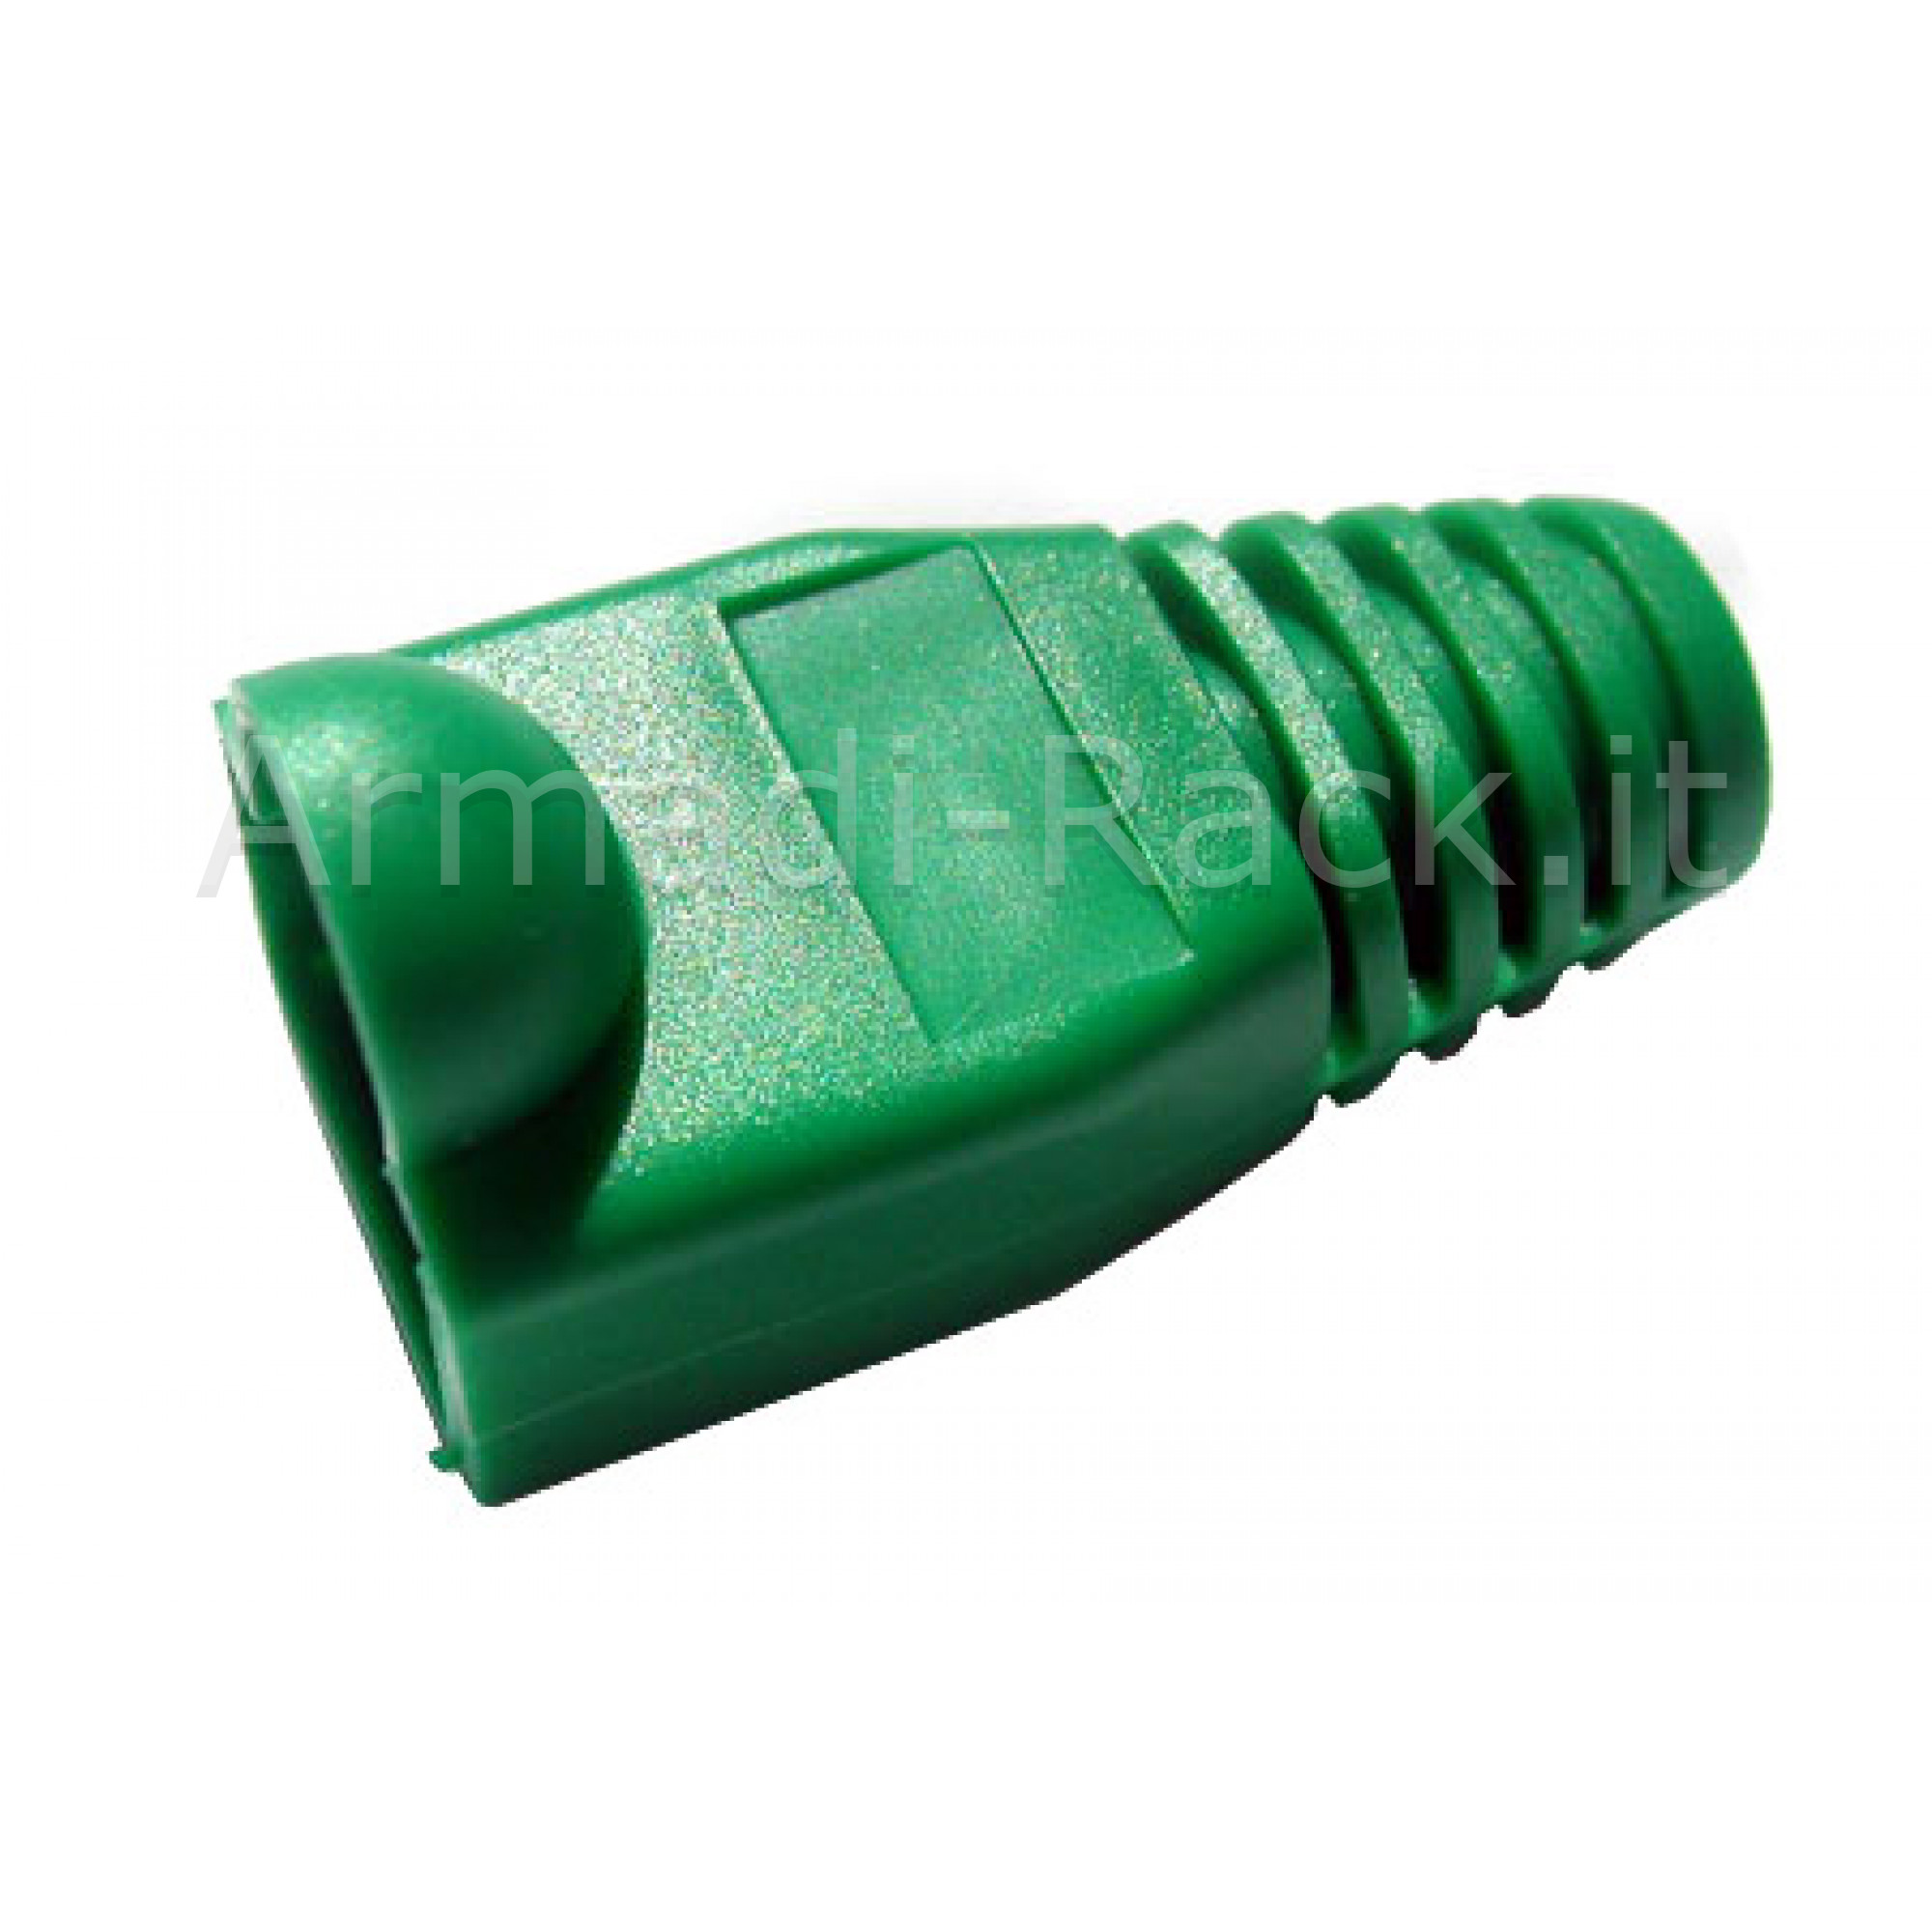 Copriconnettore per Plug Rj45 Verde (A-Mot/G 8/8)